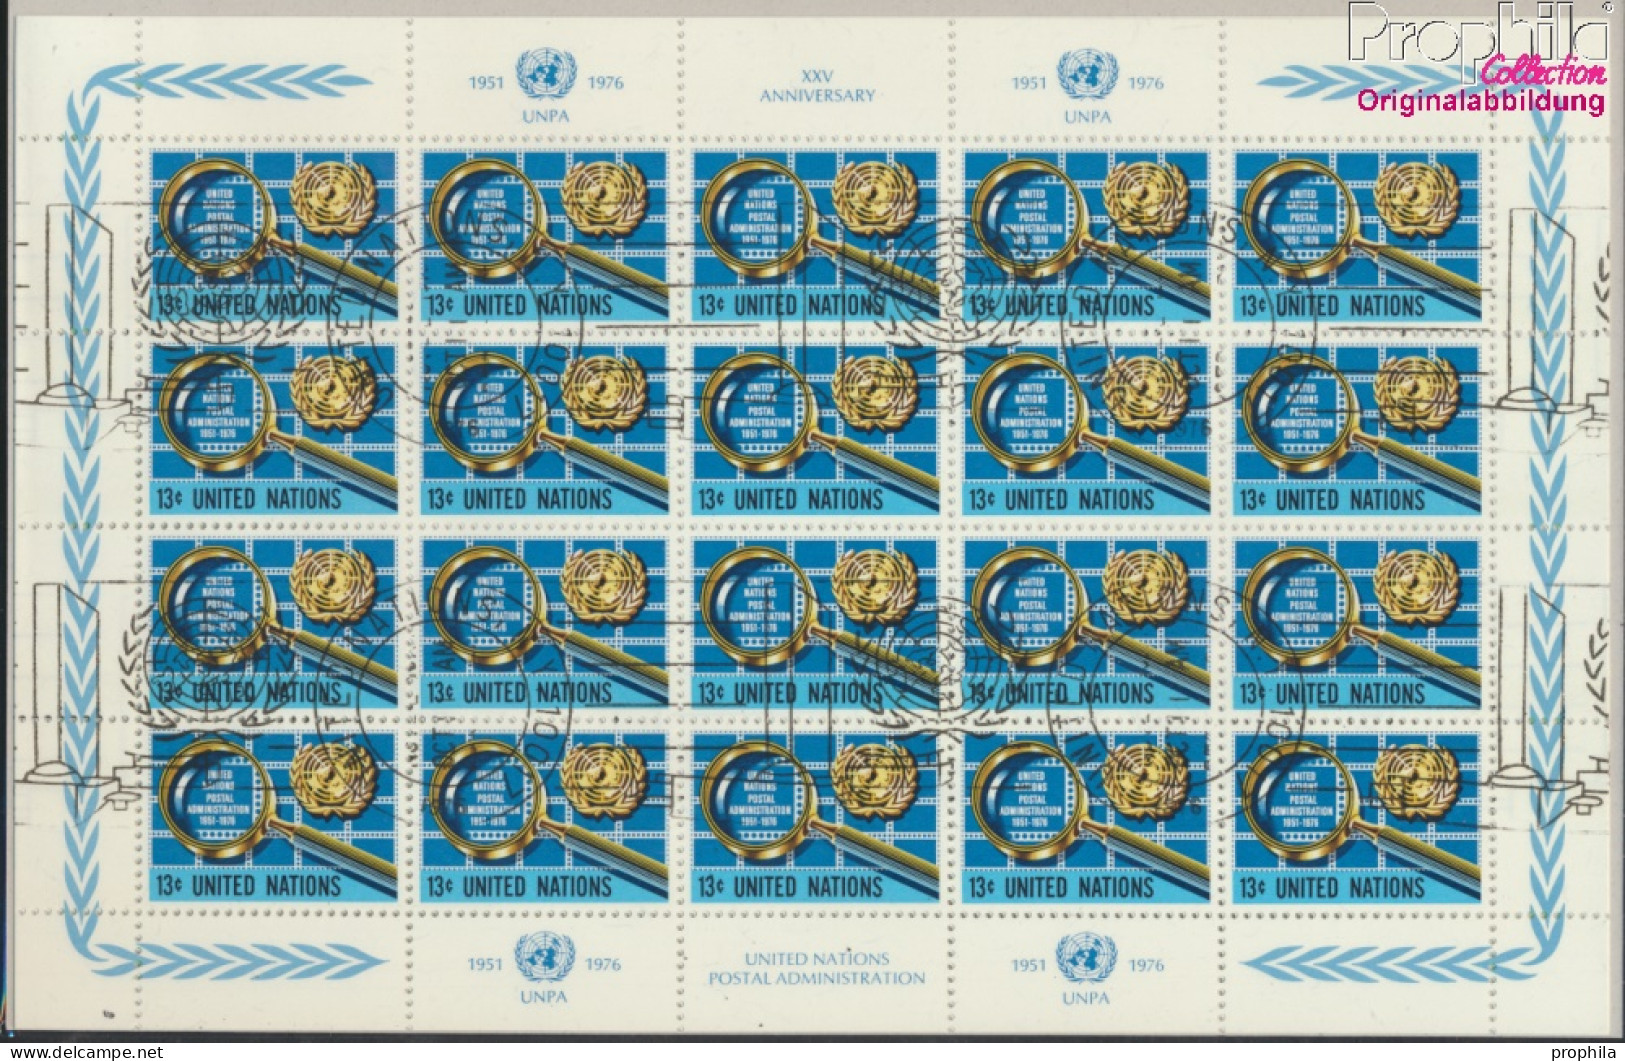 UNO - New York 299Klb-300Klb Kleinbogen (kompl.Ausg.) Gestempelt 1976 Postverwaltung (10050723 - Usados